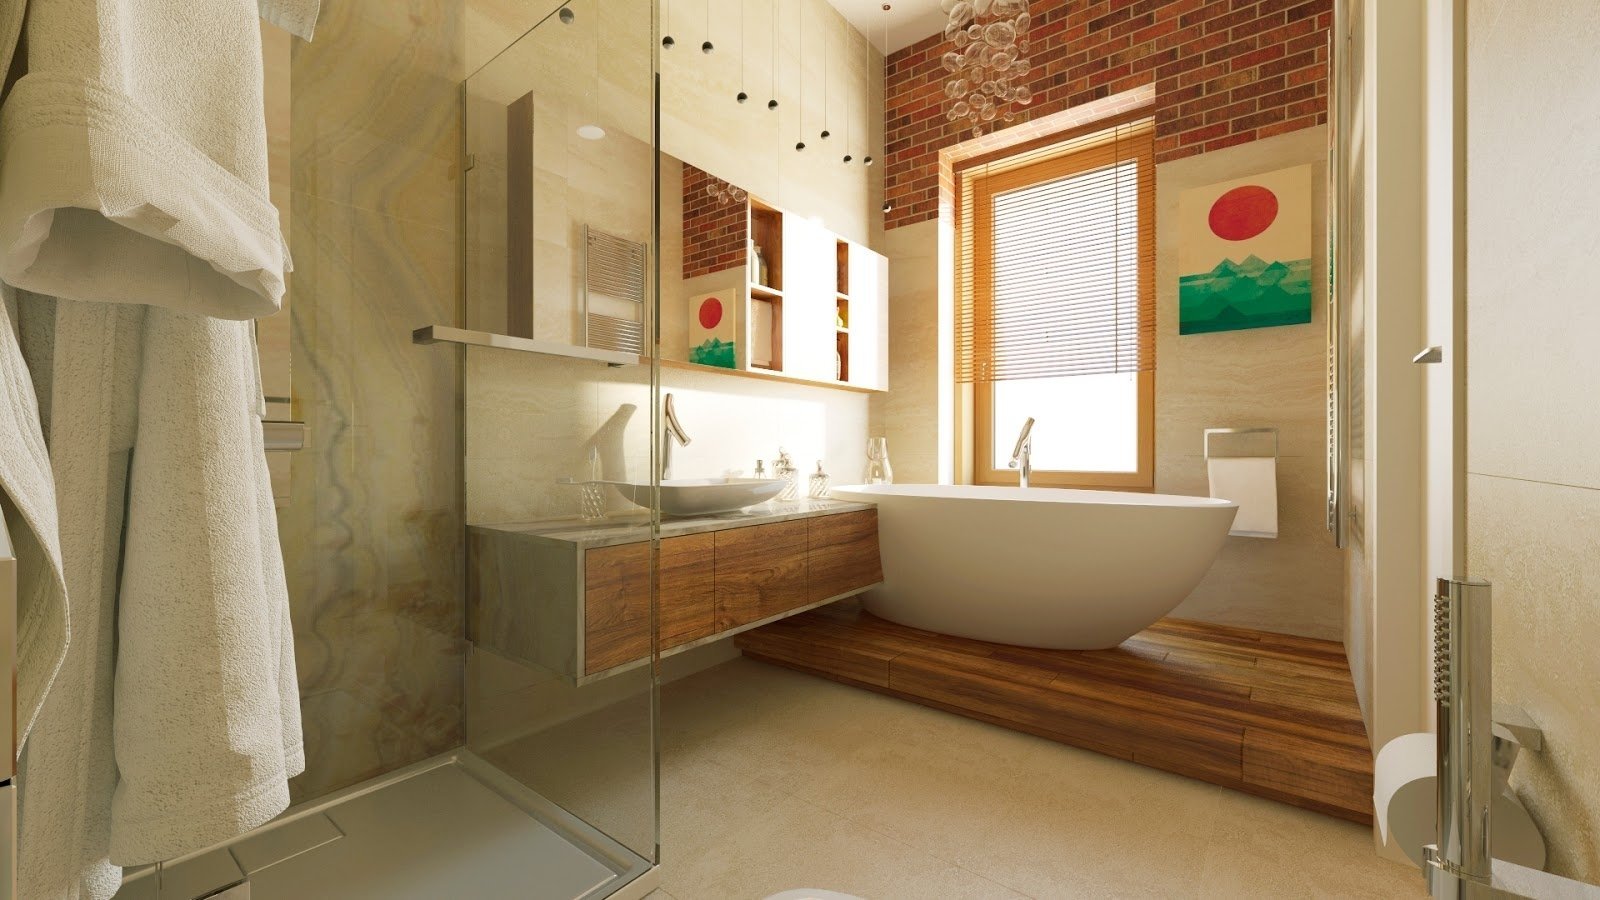 Как спланировать стильный и практичный дизайн ванной комнаты 4 кв.м